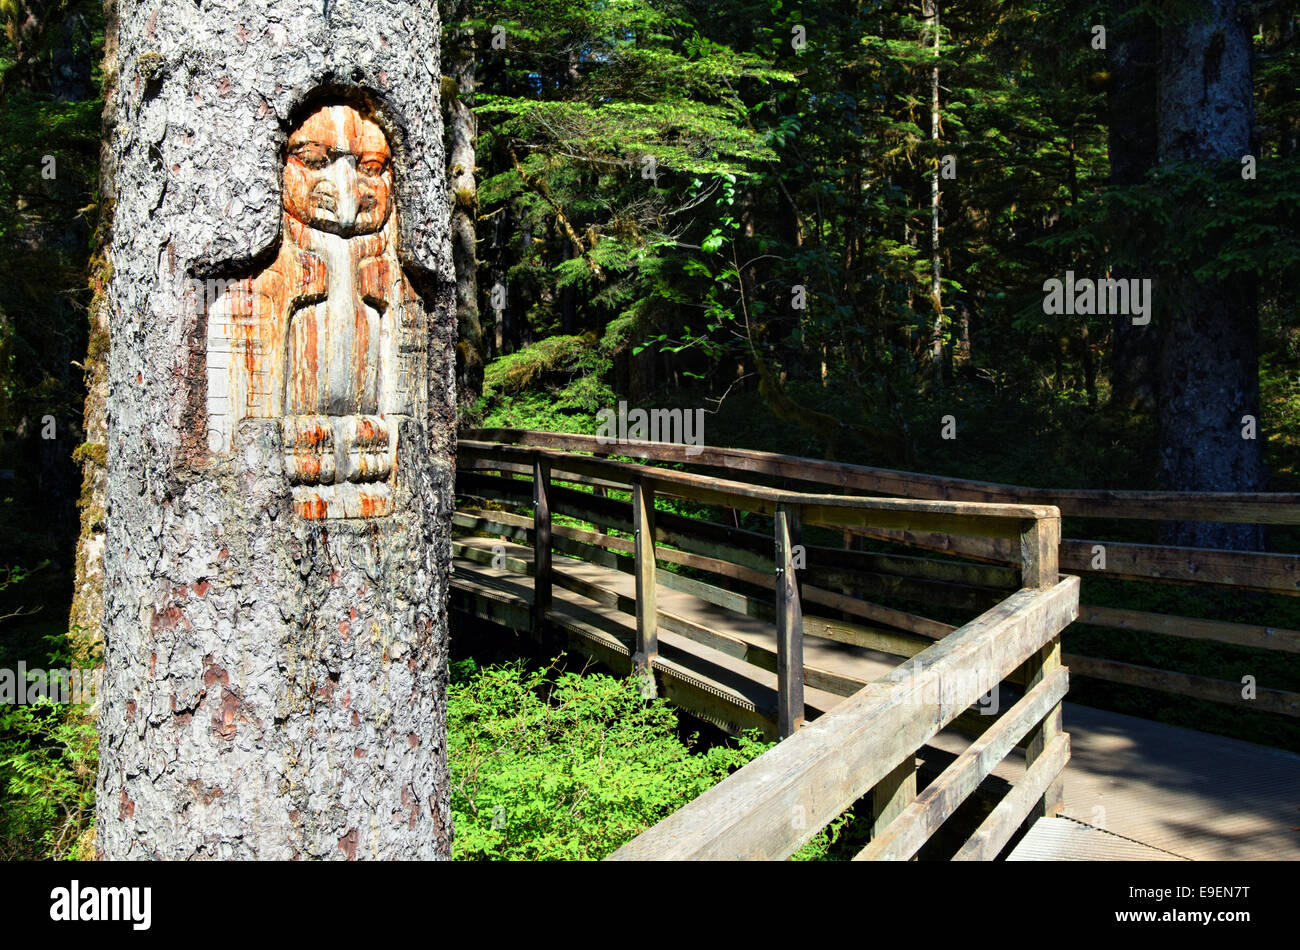 Tlingit segnavia scolpiti nella struttura ad albero, Foresta Loop Trail, Bartlett Cove, Parco Nazionale di Glacier Bay, Alaska, STATI UNITI D'AMERICA Foto Stock